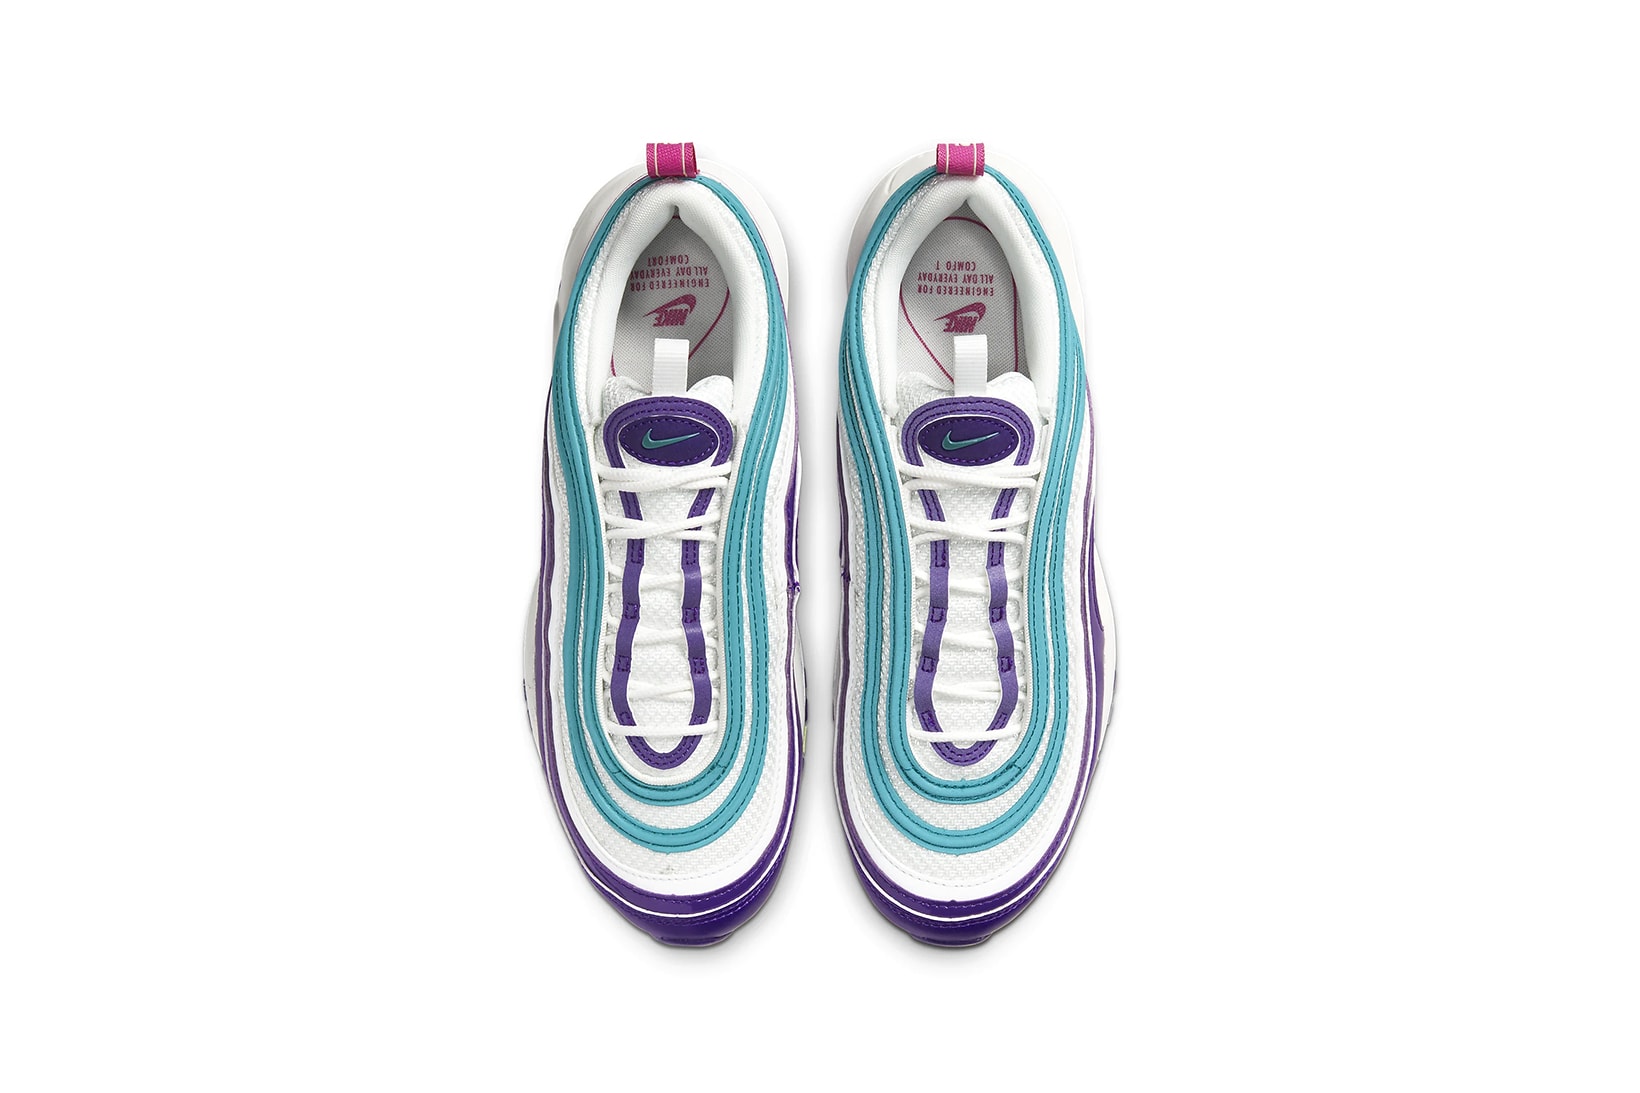 nike air max 97 womens sneakers purple blue white shoes footwear sneakerhead